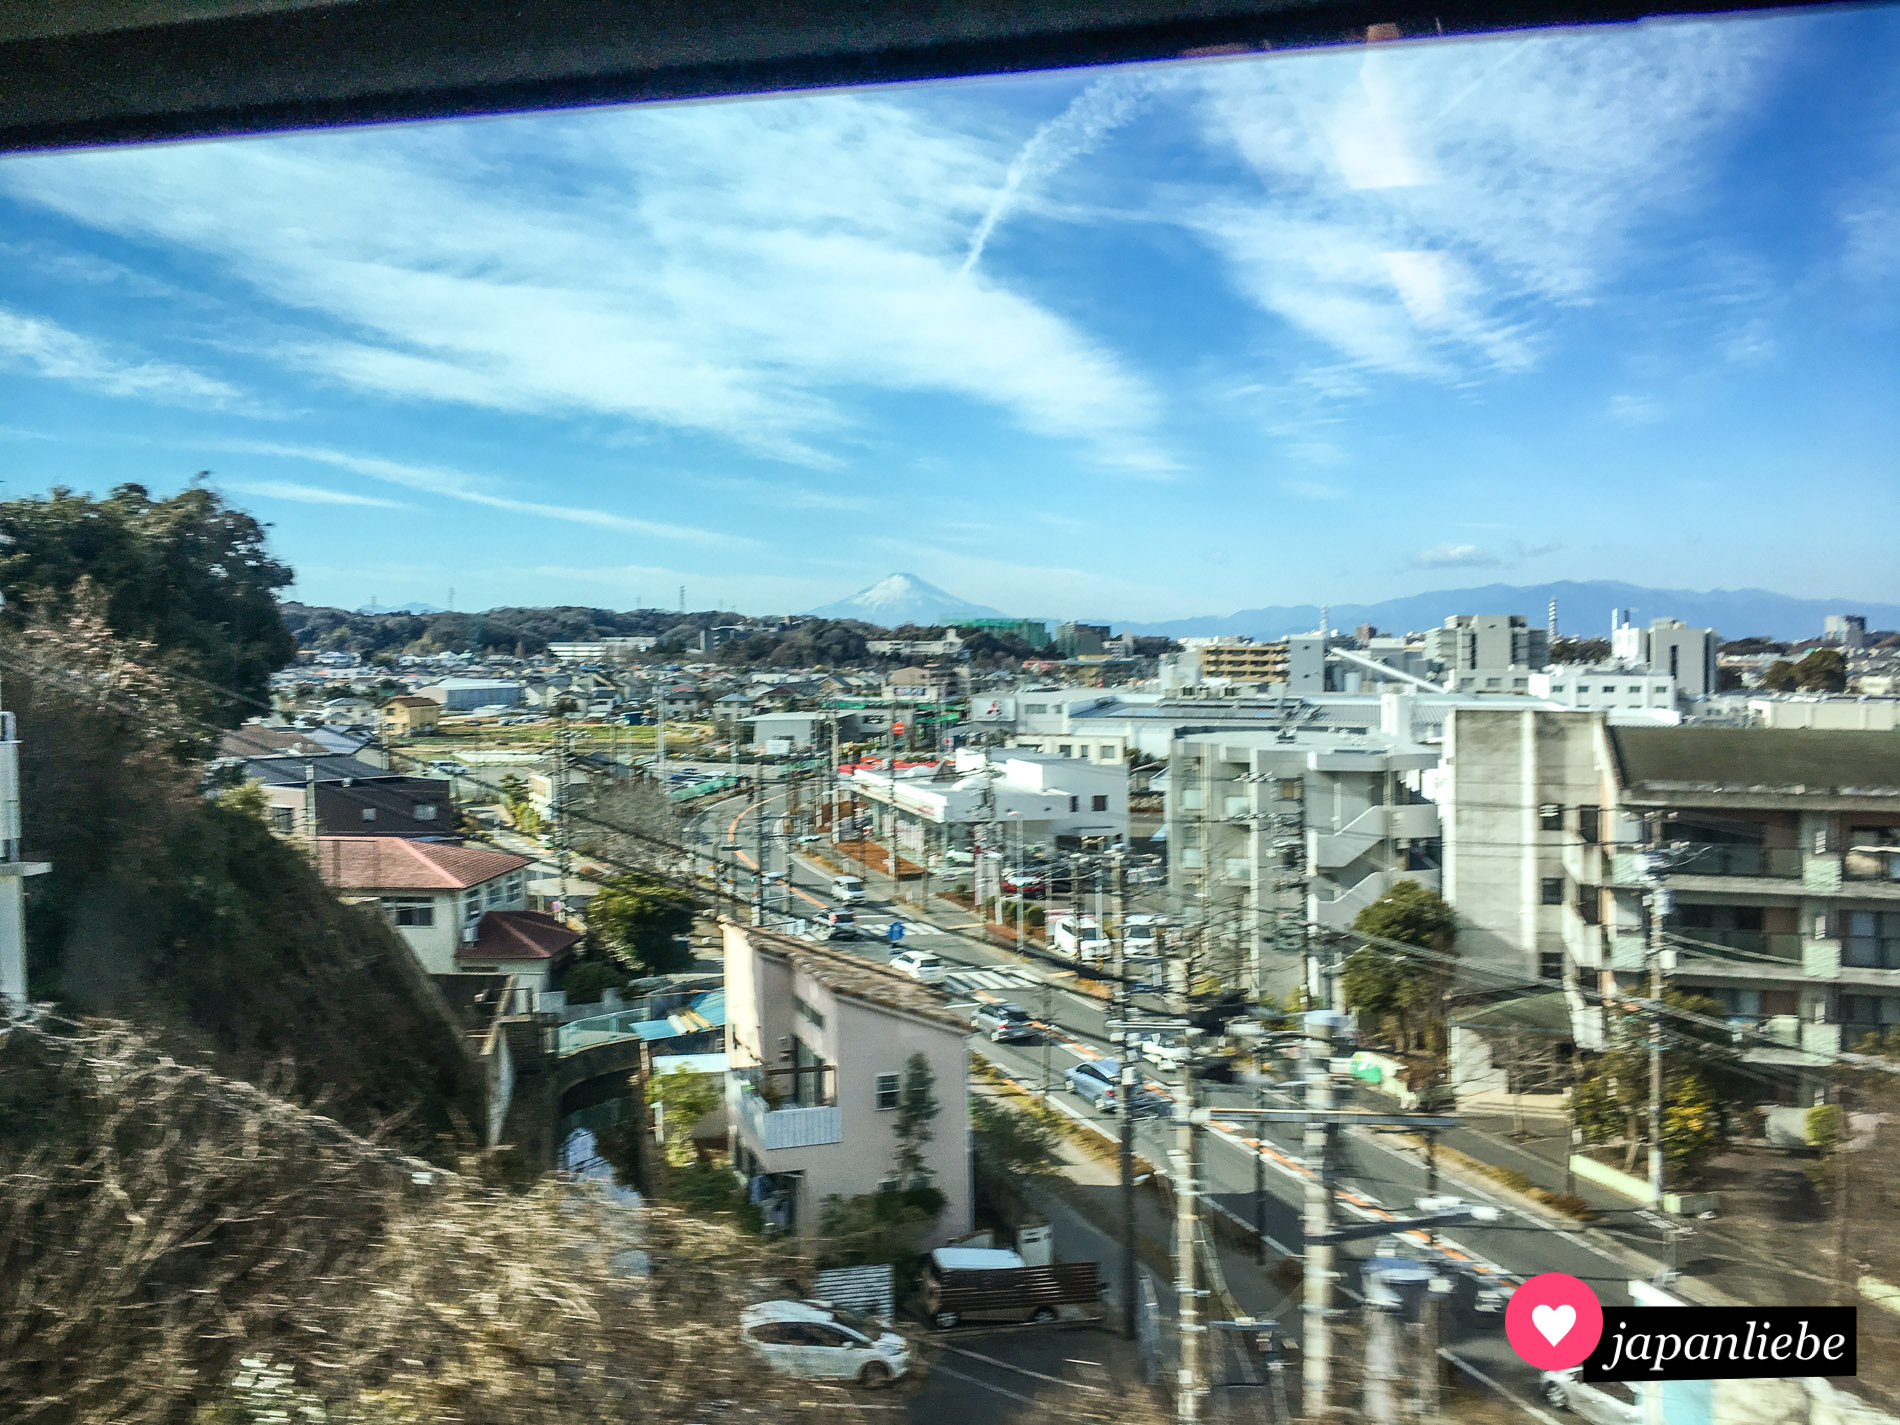 Bei klarem Wetter hat man Blick auf den Fuji aus der Shōnan Monorail zwischen Ōfuna und Enoshima.